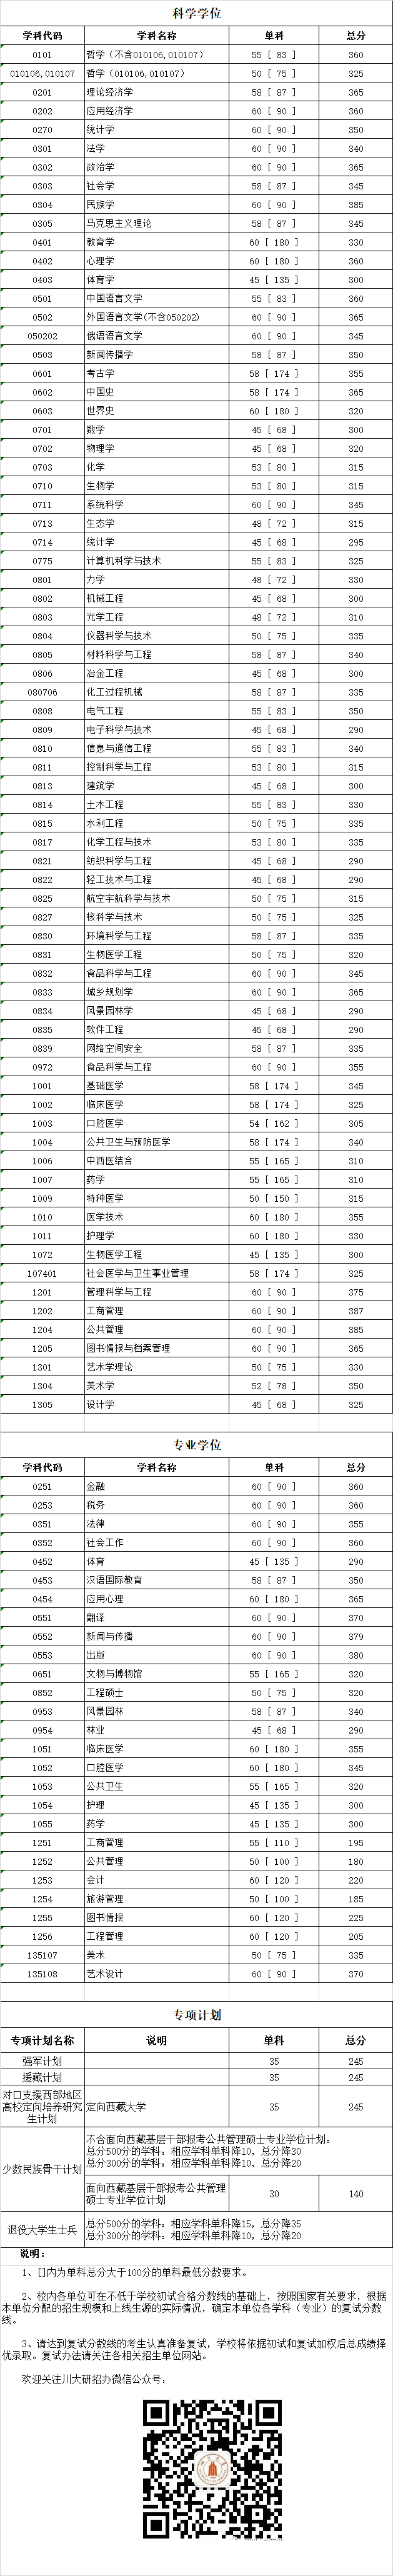 四川大学2019年考研复试分数线已公布